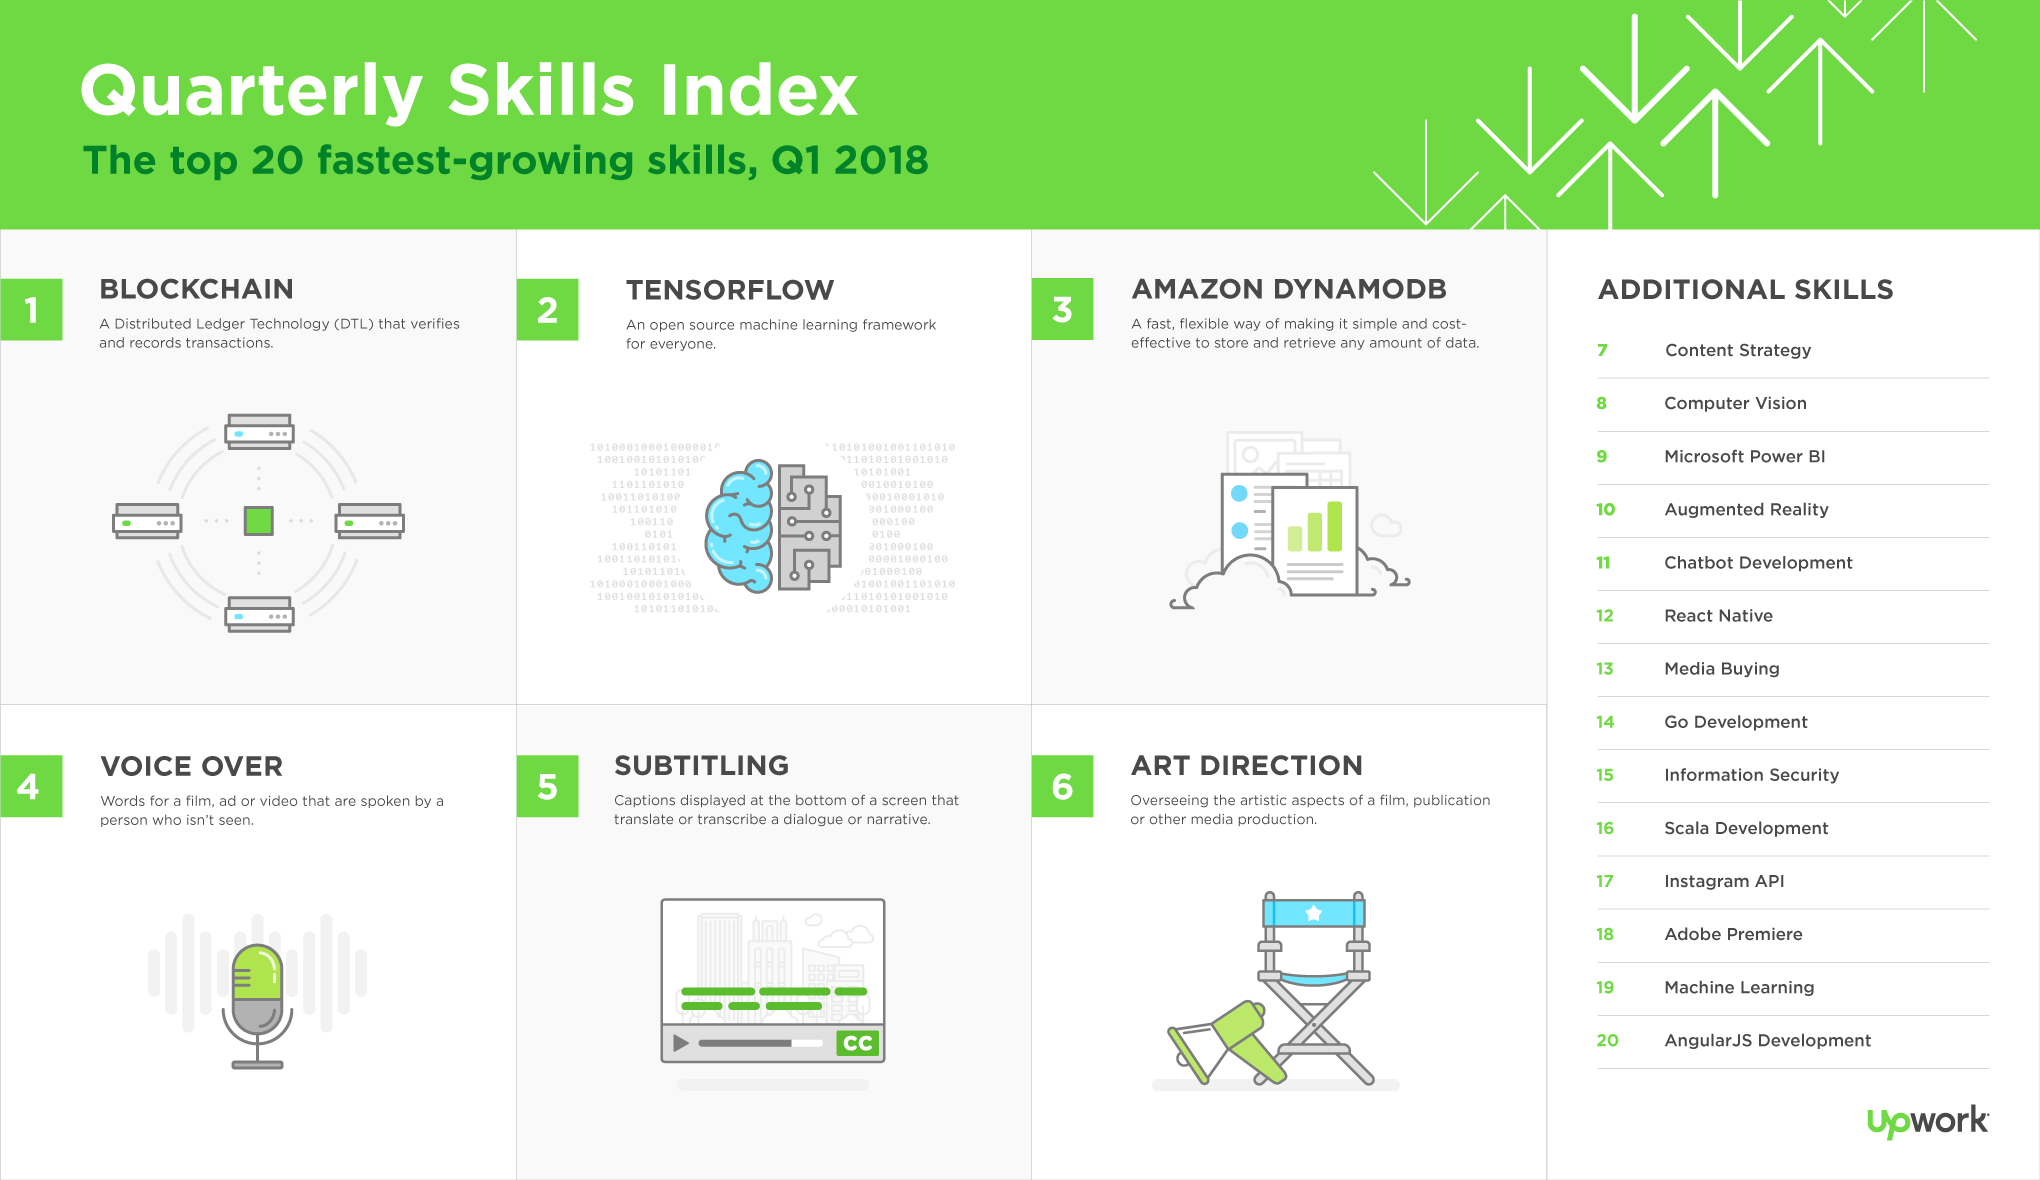 Upwork Q1 2018 Skills Index